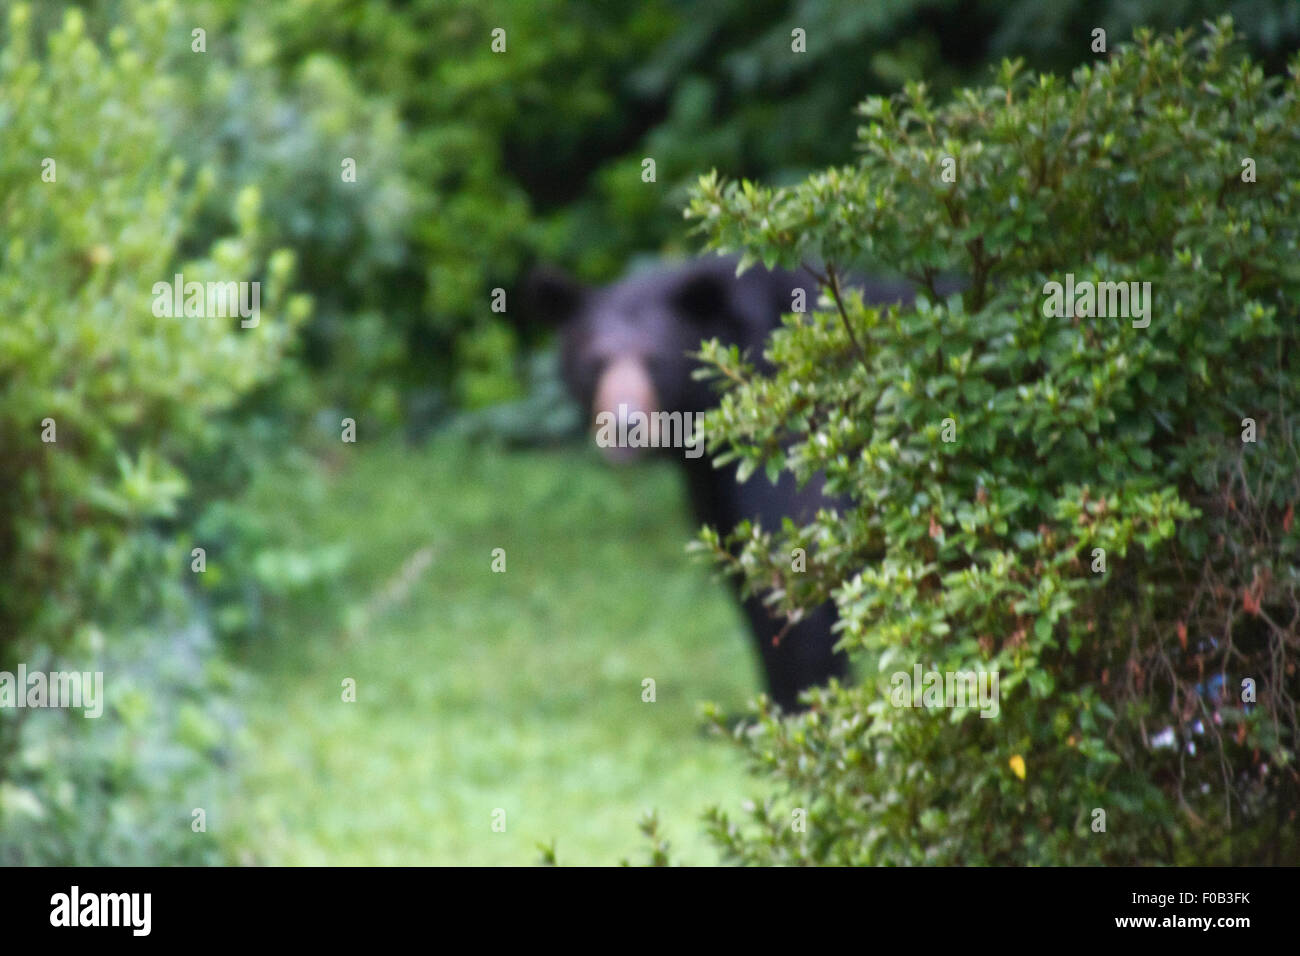 Schwer zu sehen (oder vorhersehen) Gefahr lauert hinter einigen Büschen Sommer in Form von einem großen schwarzen Bären Stockfoto